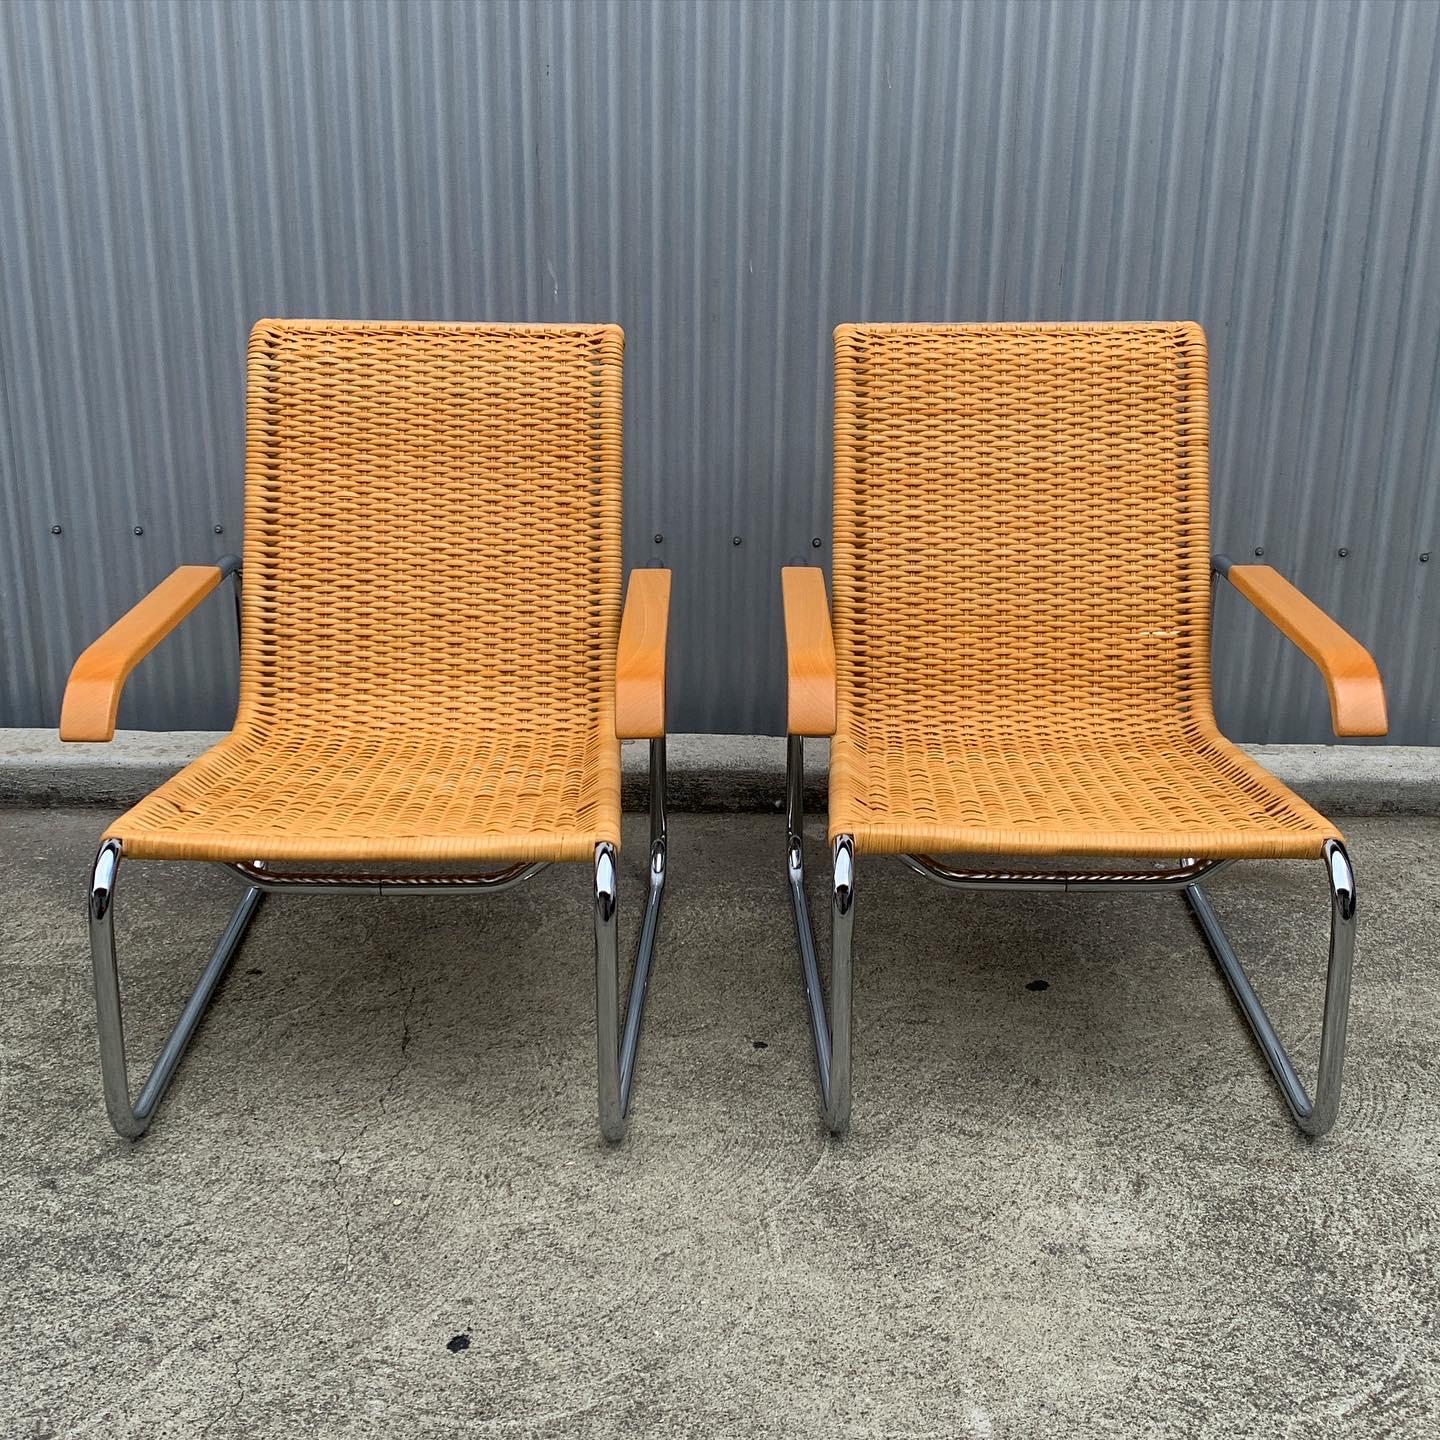 Incroyable paire de chaises longues B35 de Marcel Breuer. Cette paire est dotée d'un cannage tissé original, d'un cadre cantilever chromé et d'accoudoirs en bois de hêtre. Les autocollants originaux d'ICF se trouvent sous le siège avec 